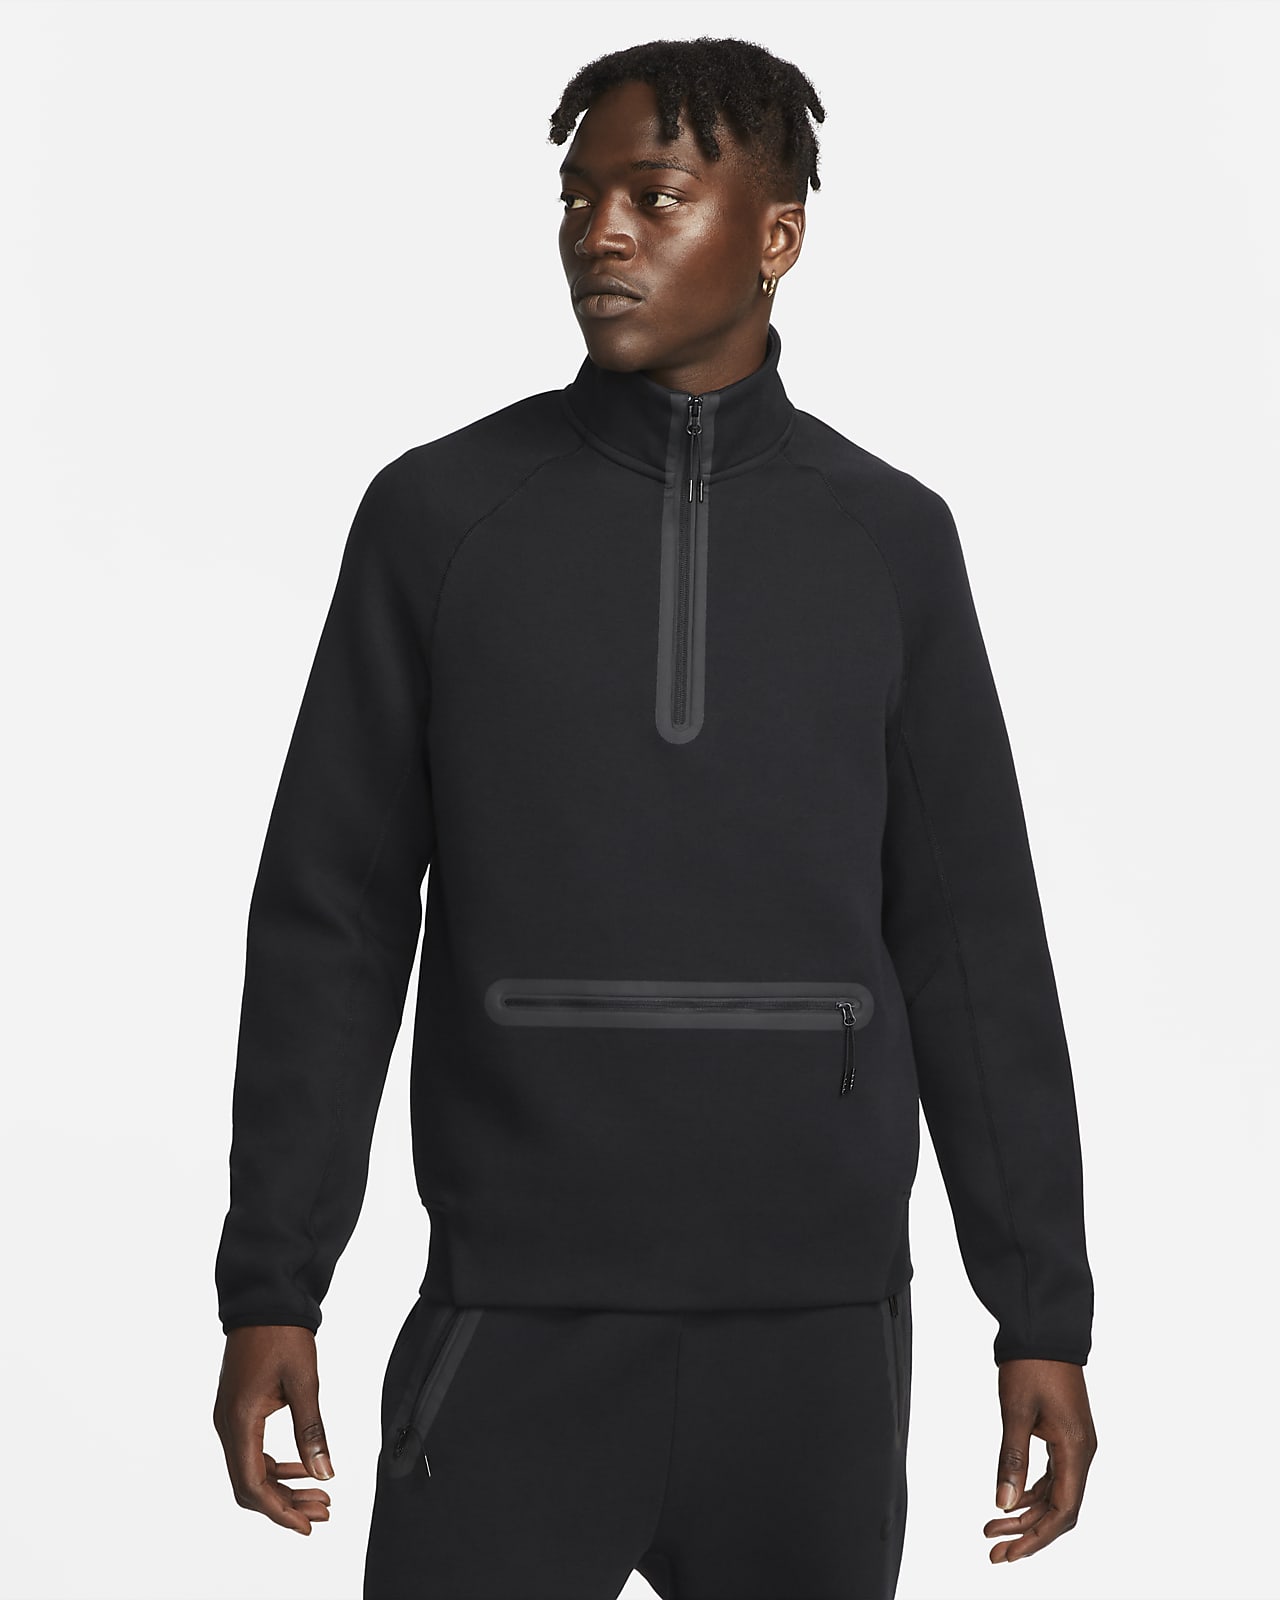 Short Nike Sportswear Tech Fleece pour homme. Nike FR